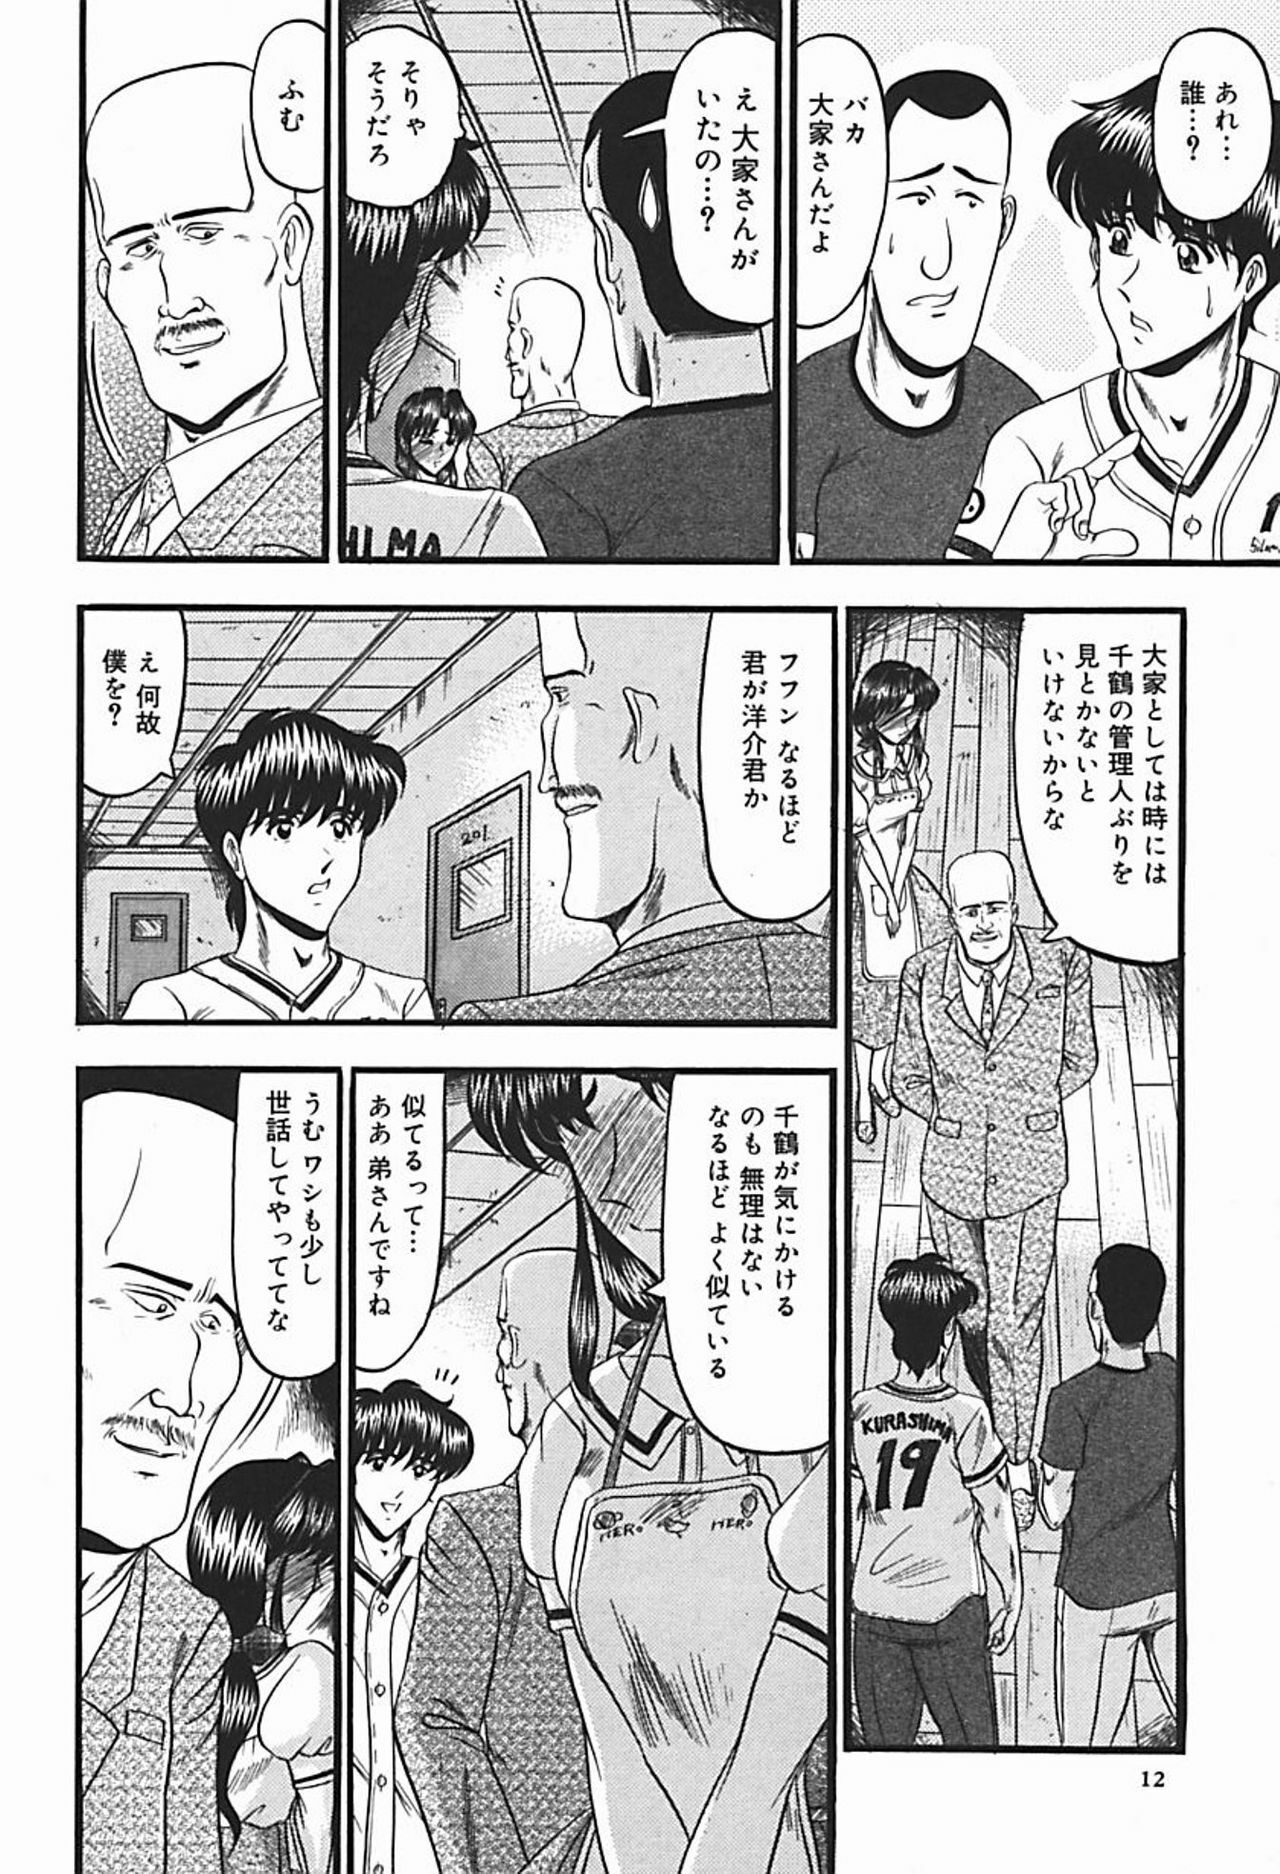 [Komura Saki] Inshuu ~Taenaru Hanabana no Shirabe~ page 17 full